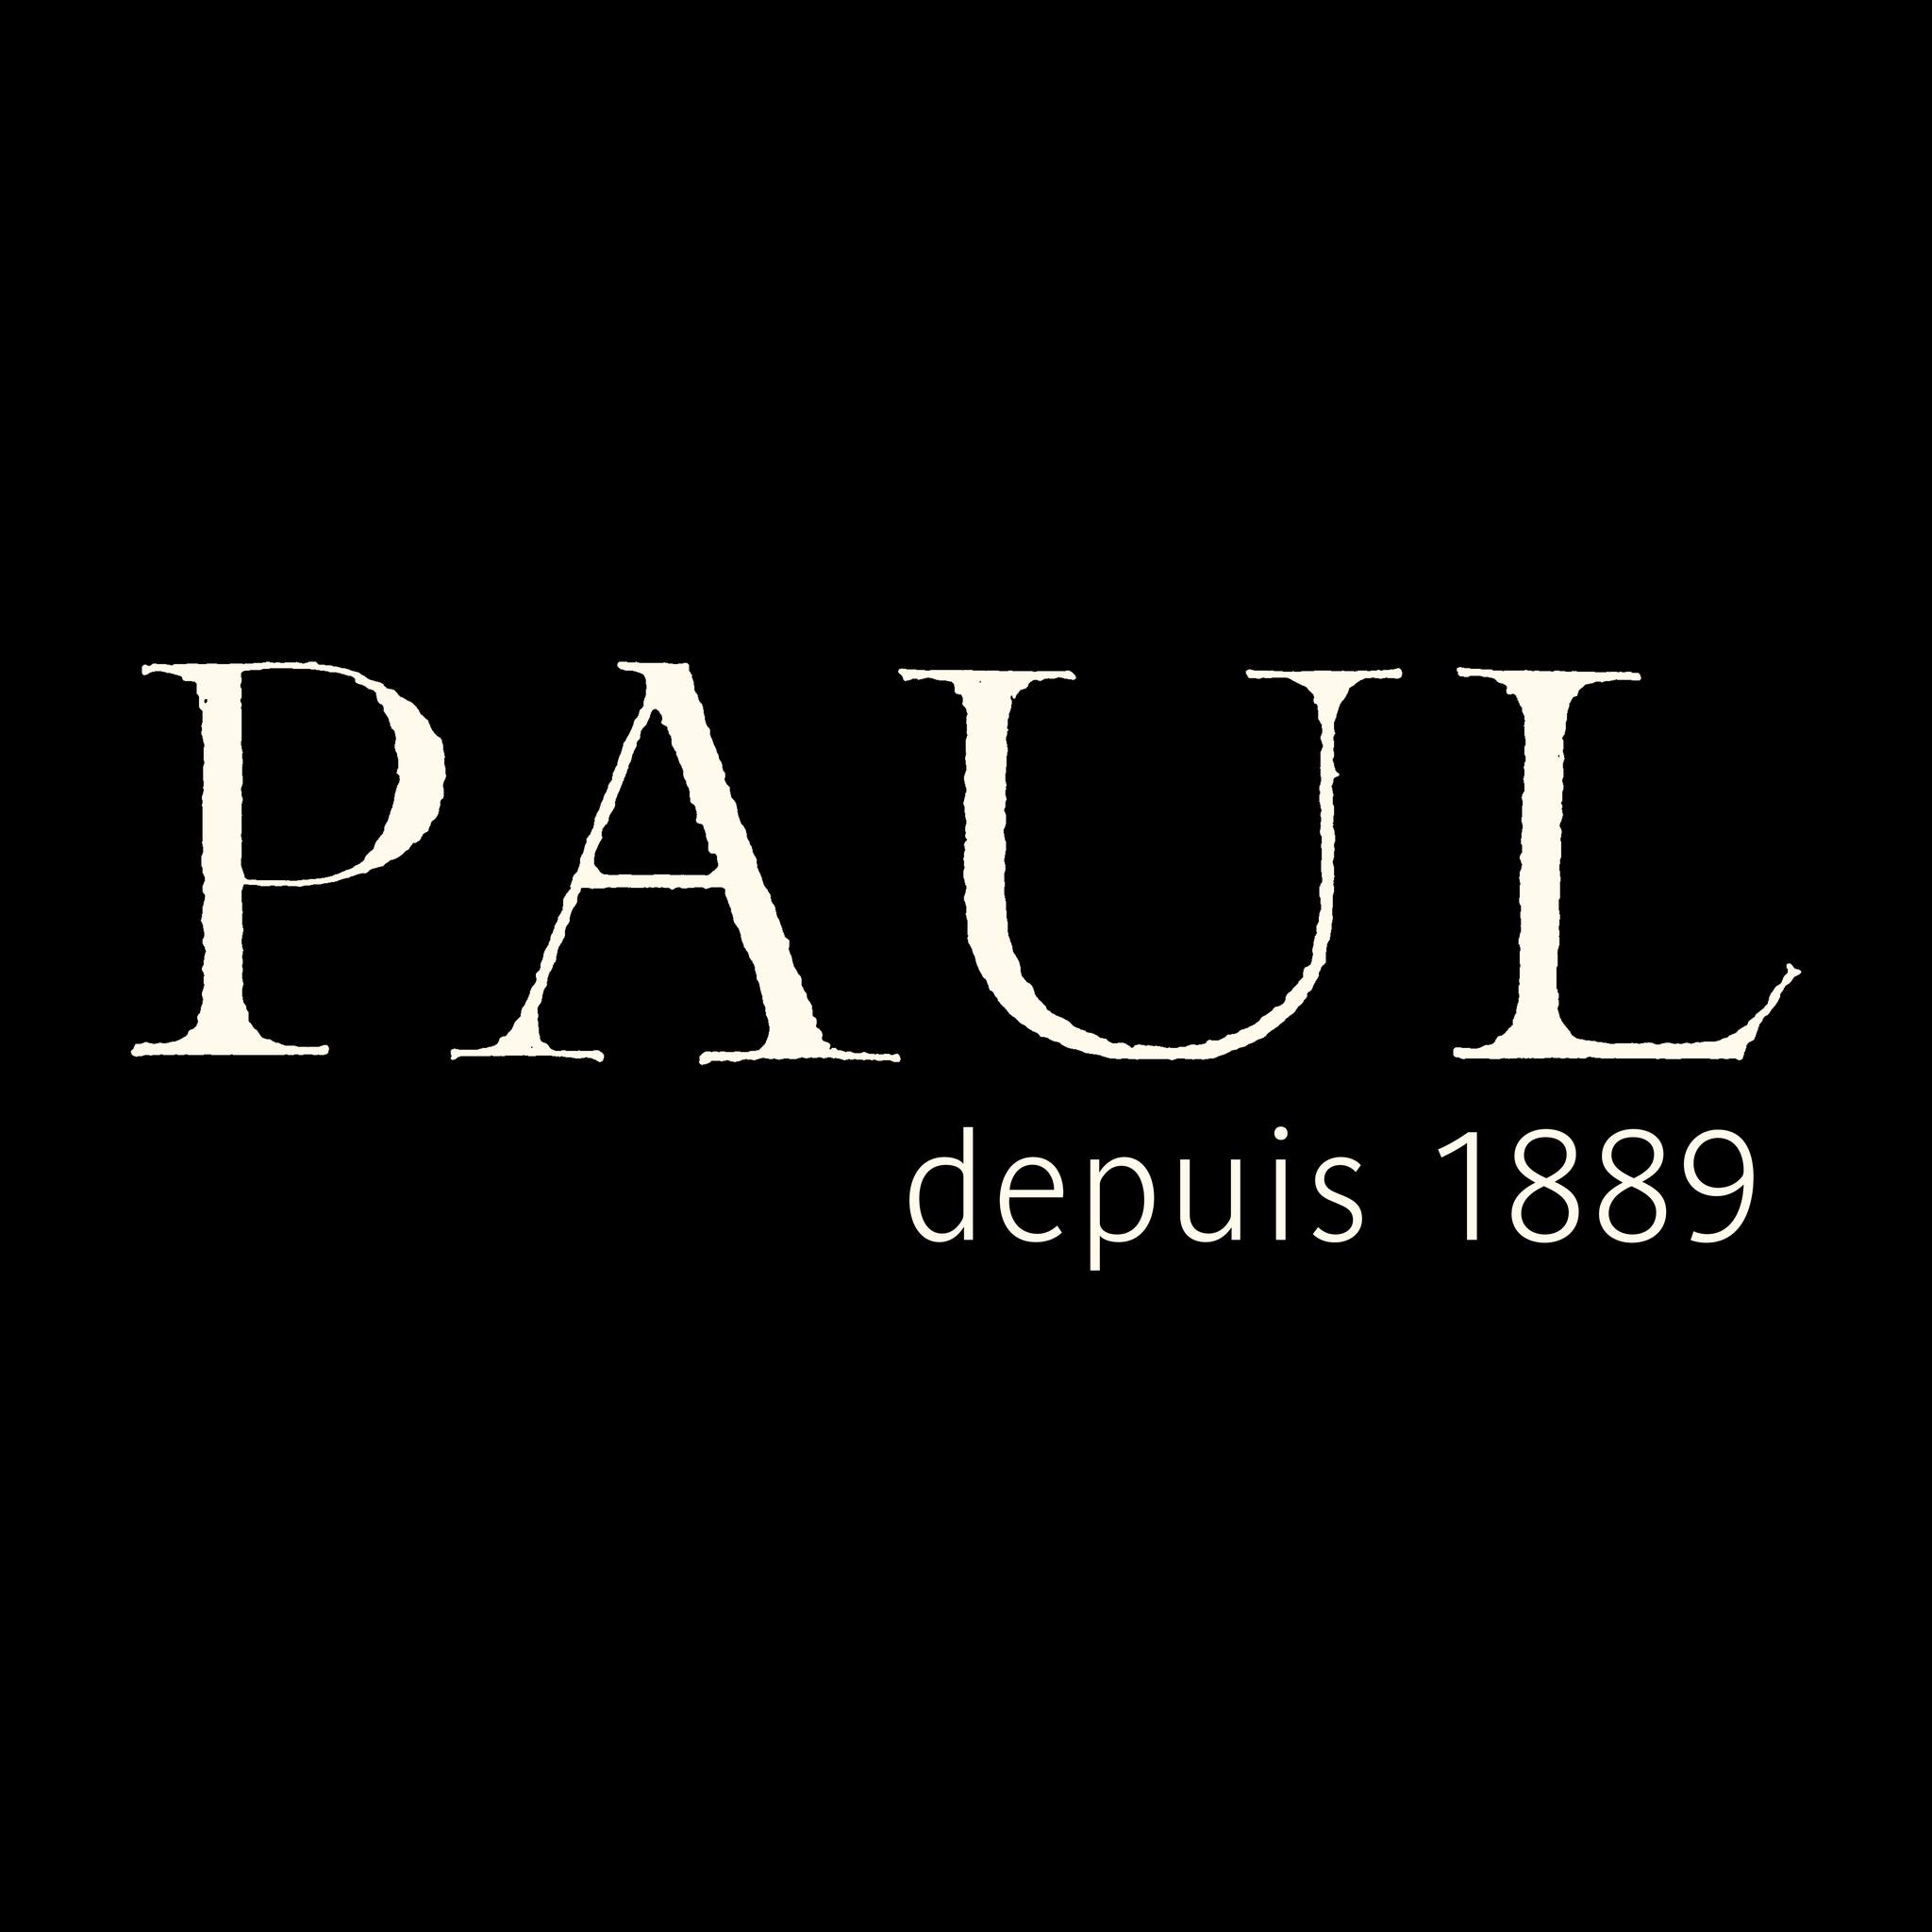 PAUL logo